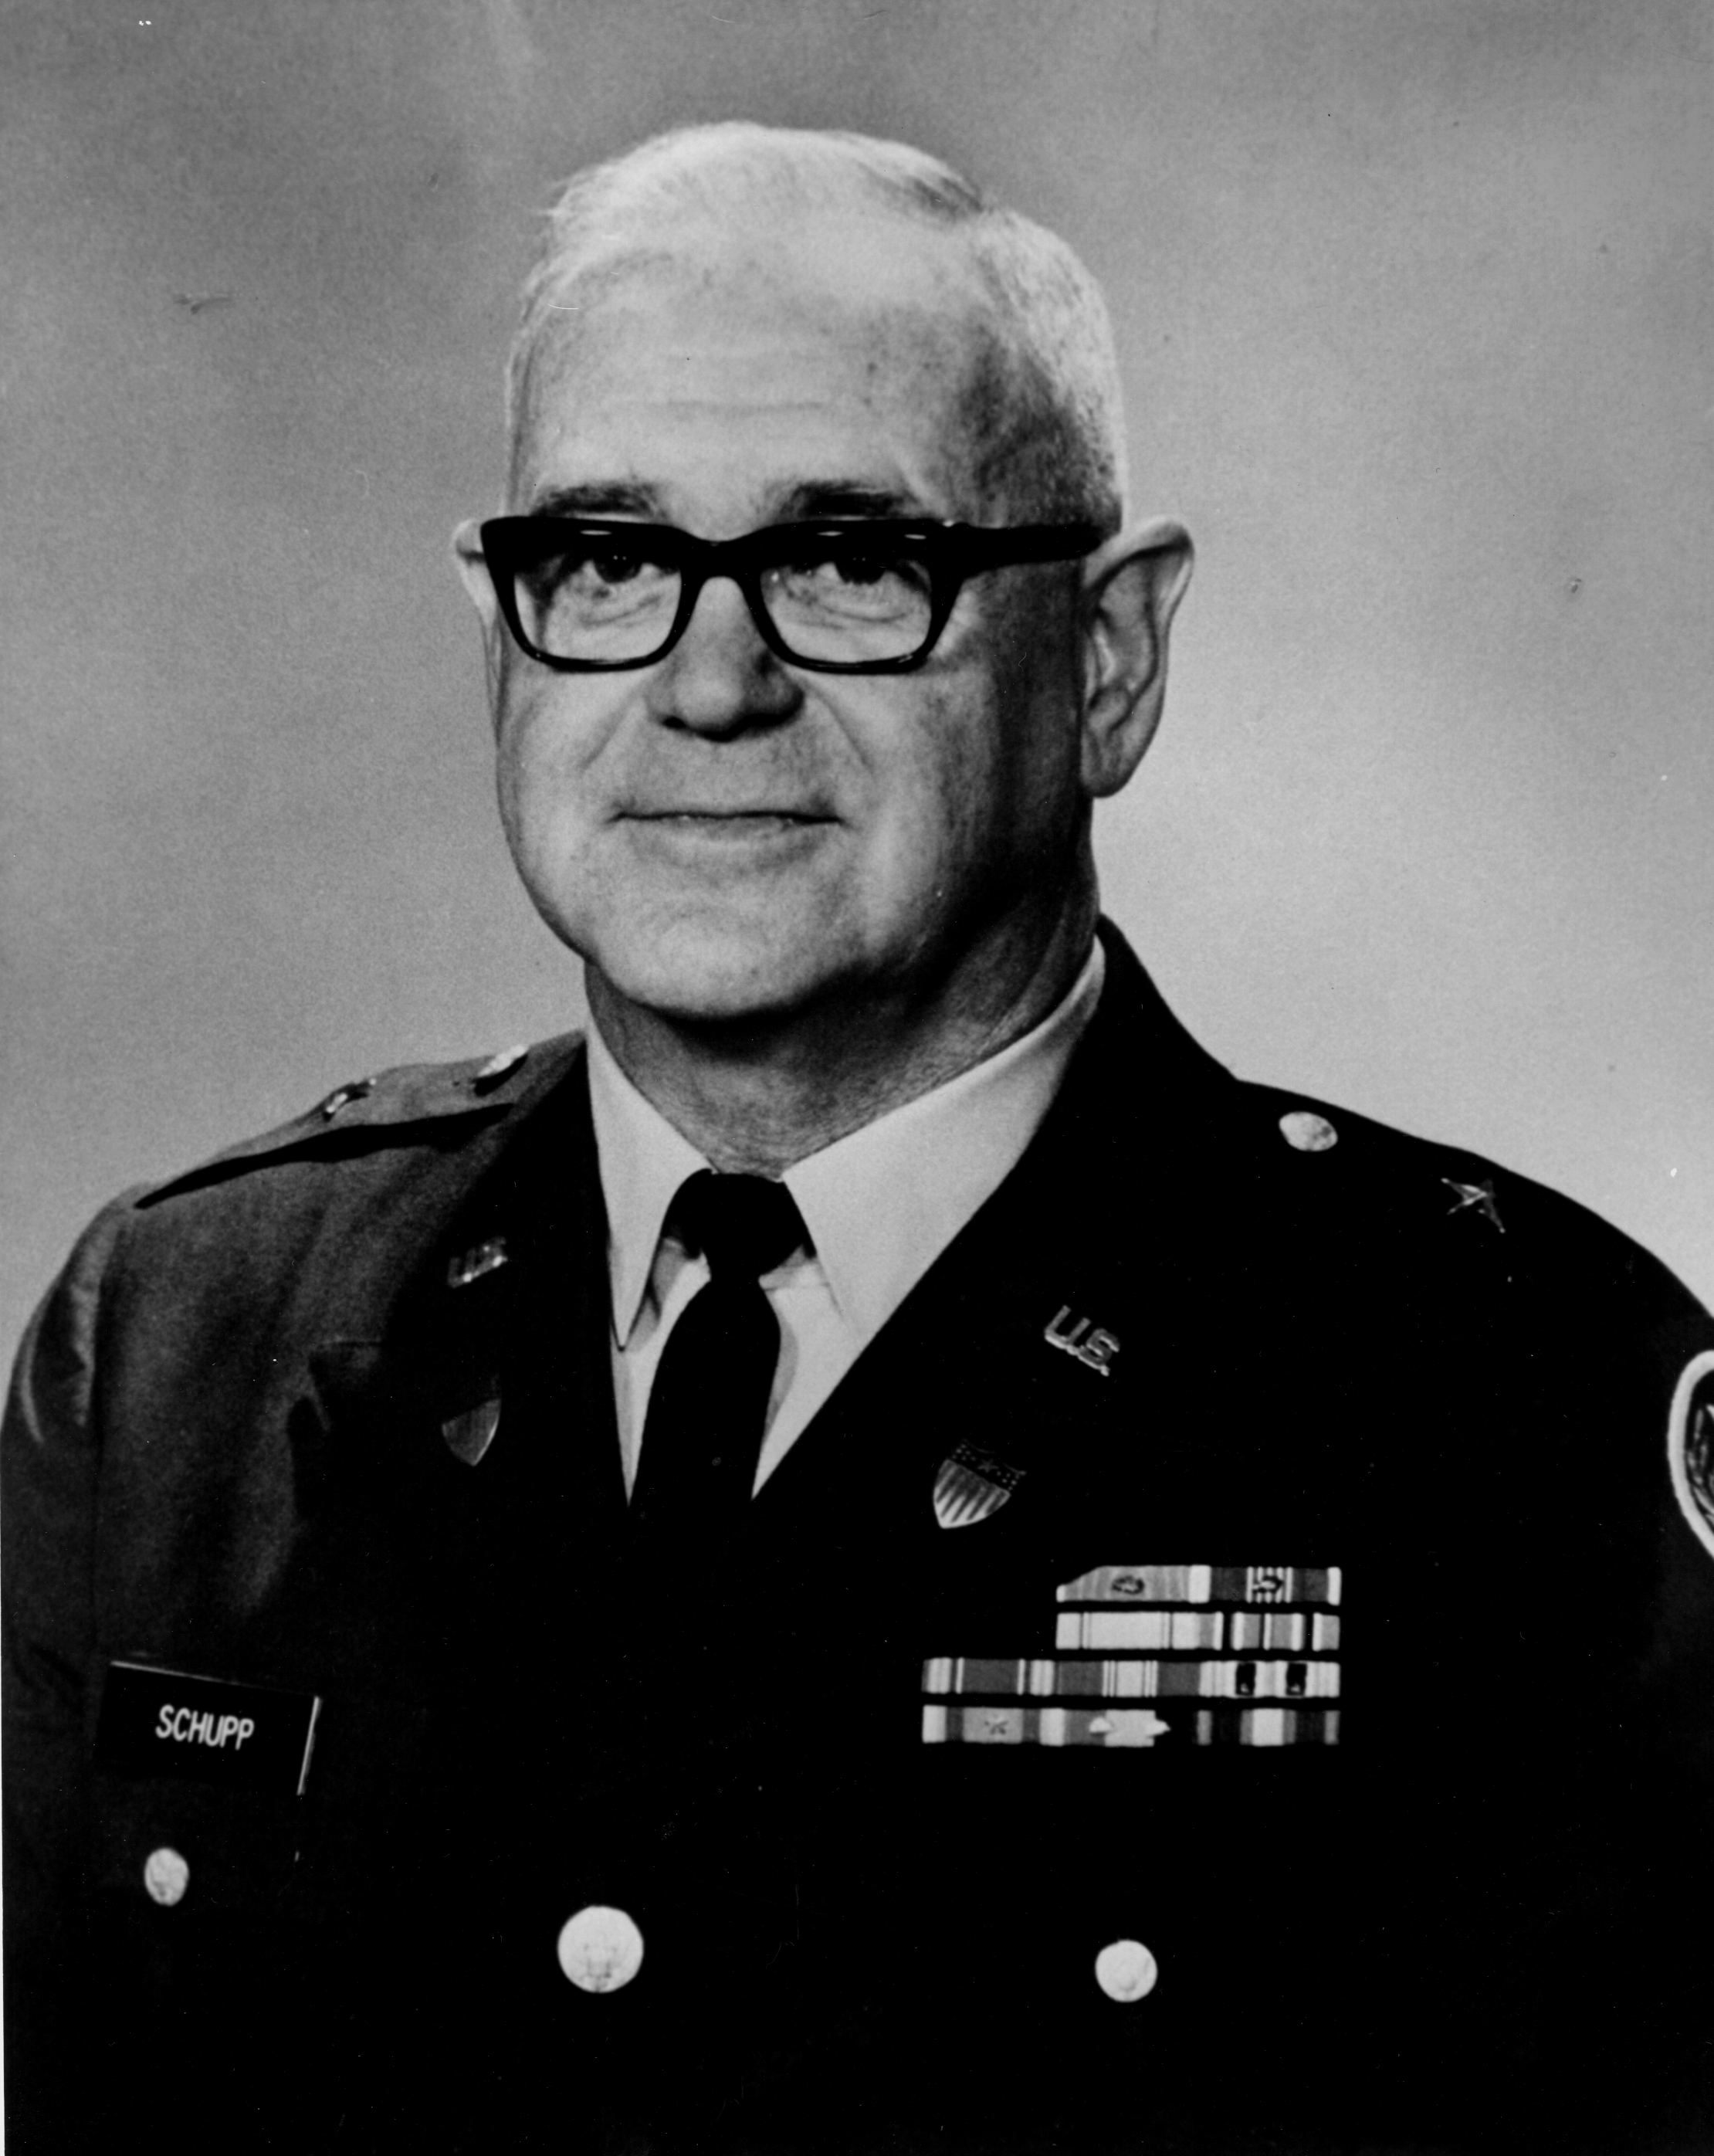 Major General Carl F. Schupp